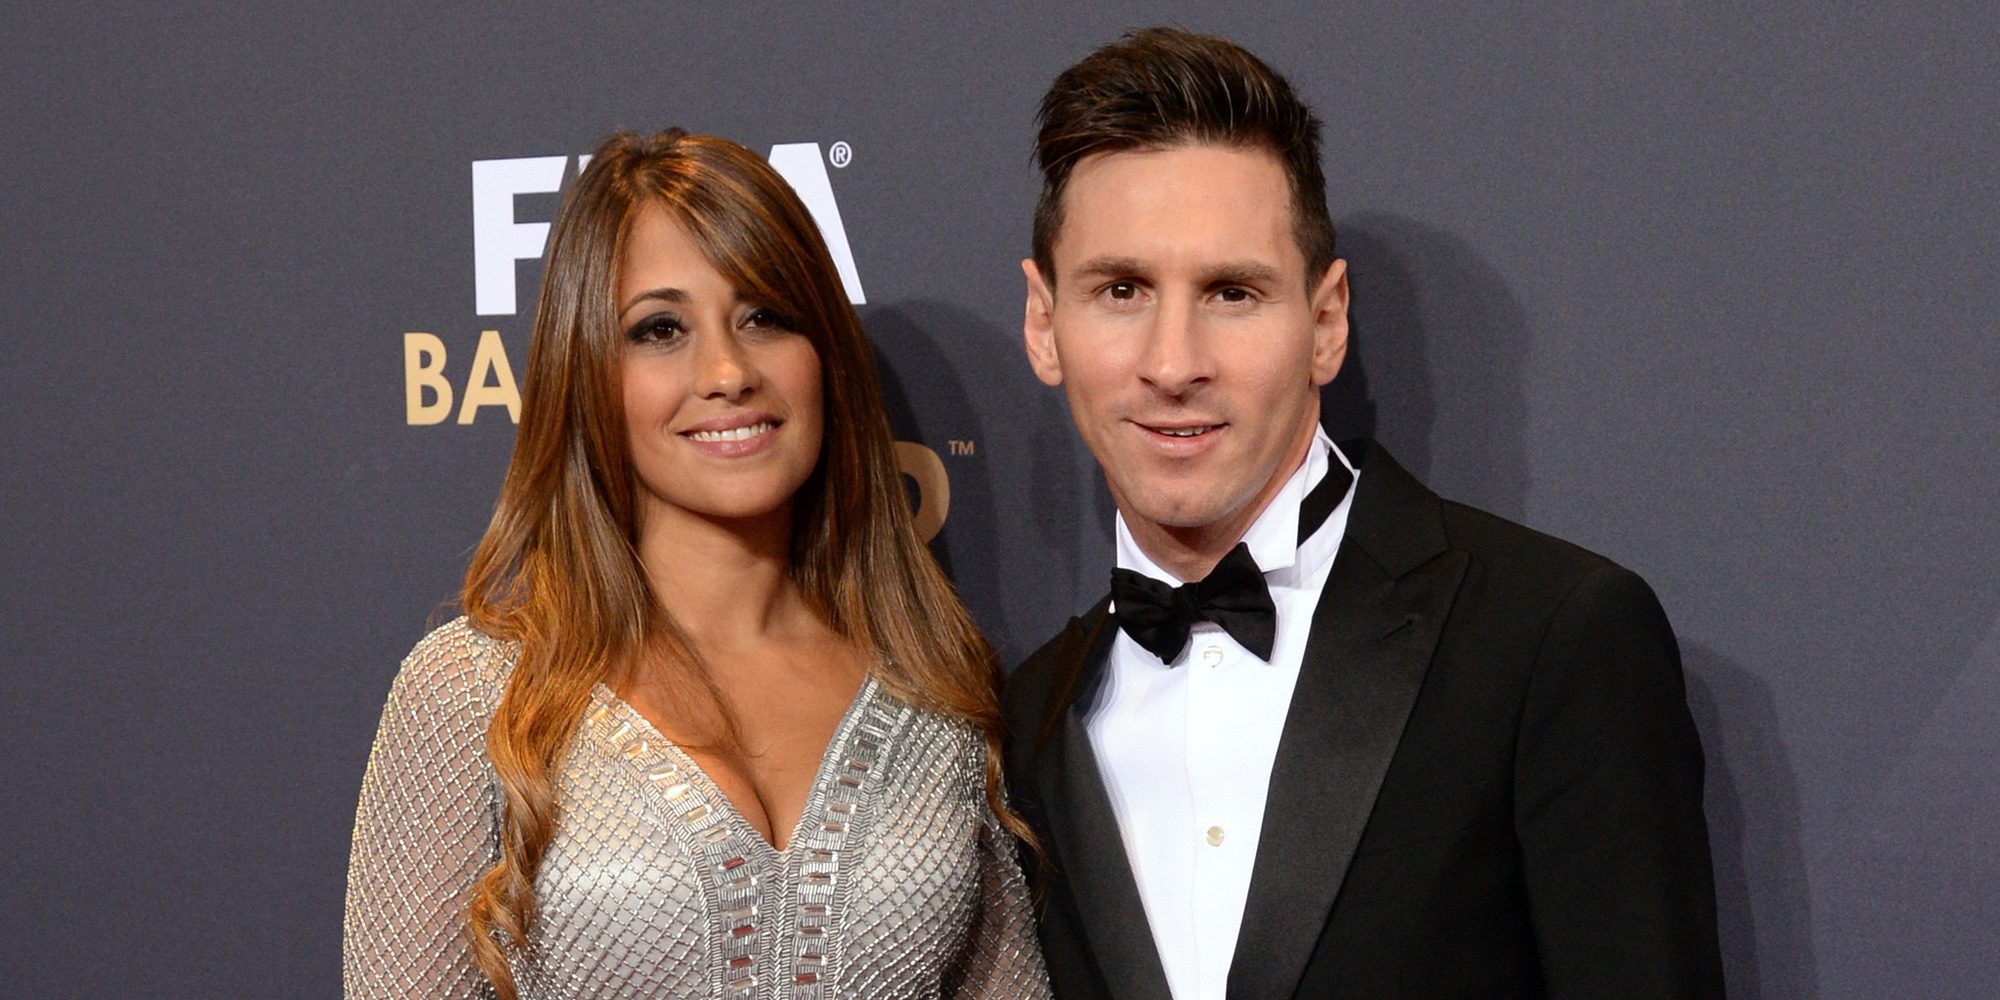 Leo Messi y Antonella Roccuzzo planean una segunda boda en Barcelona tras casarse en Argentina